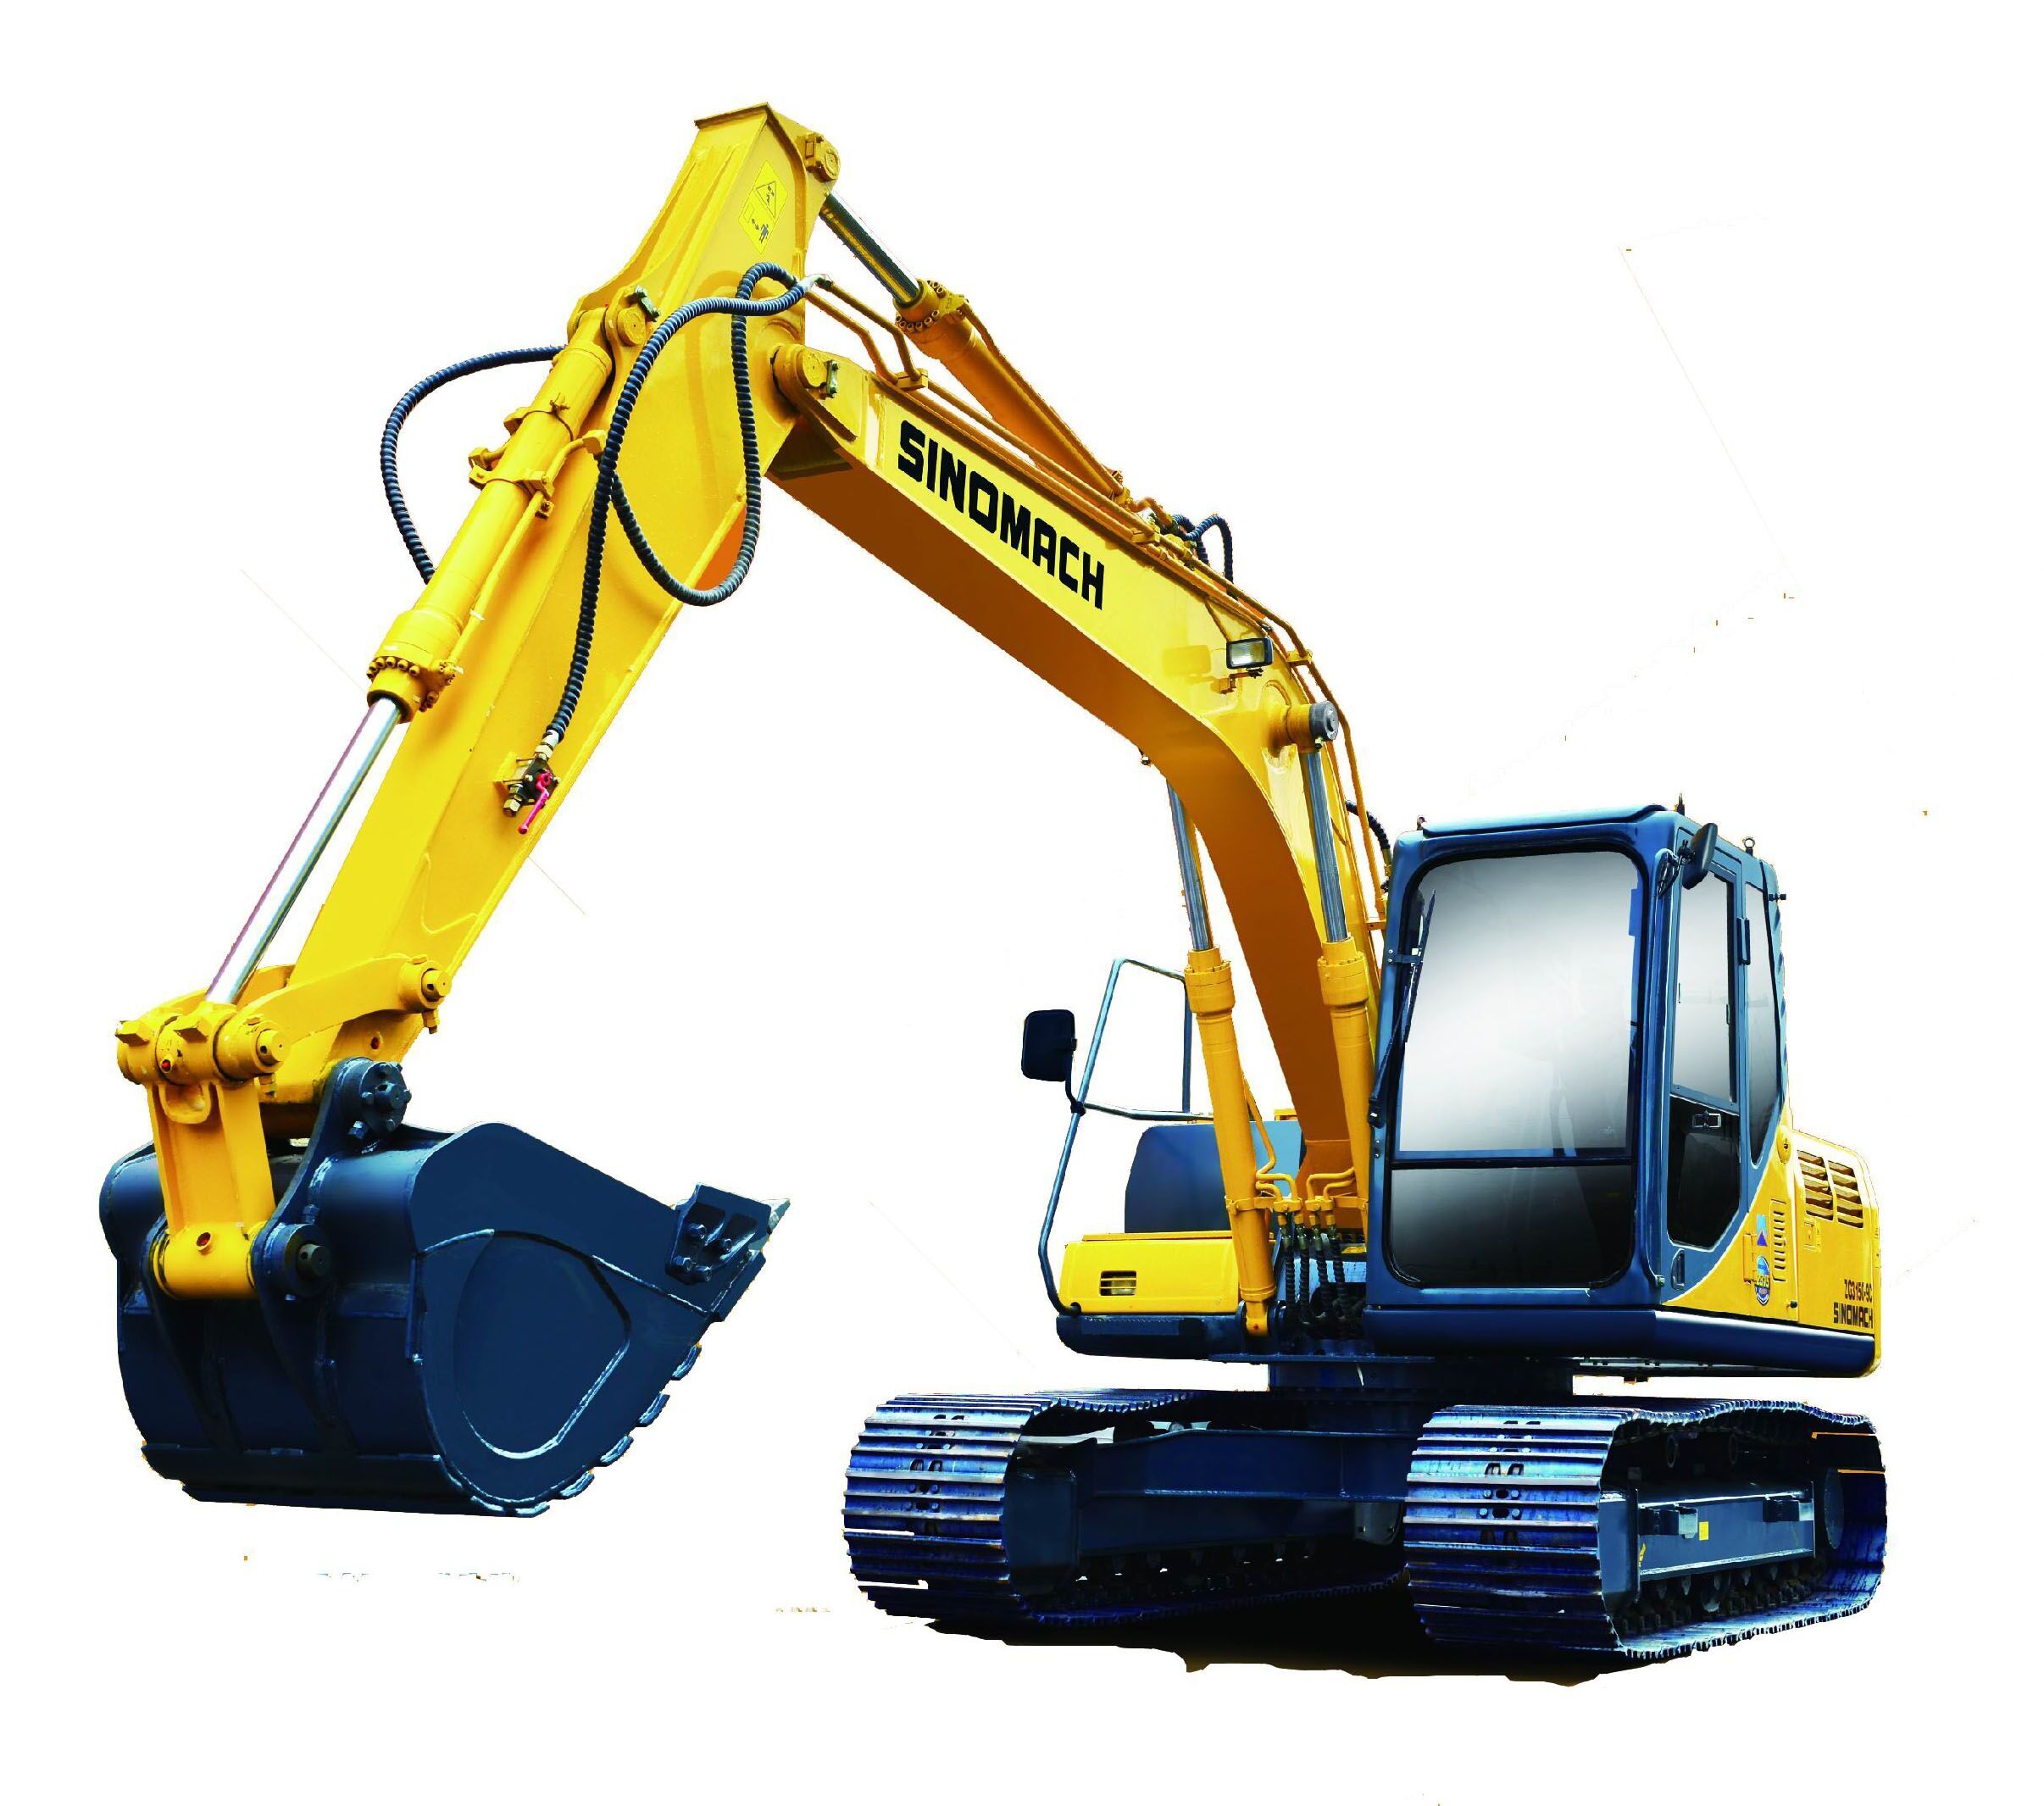 雷沃重工挖掘机FR100H-8产品高清图-工程机械在线